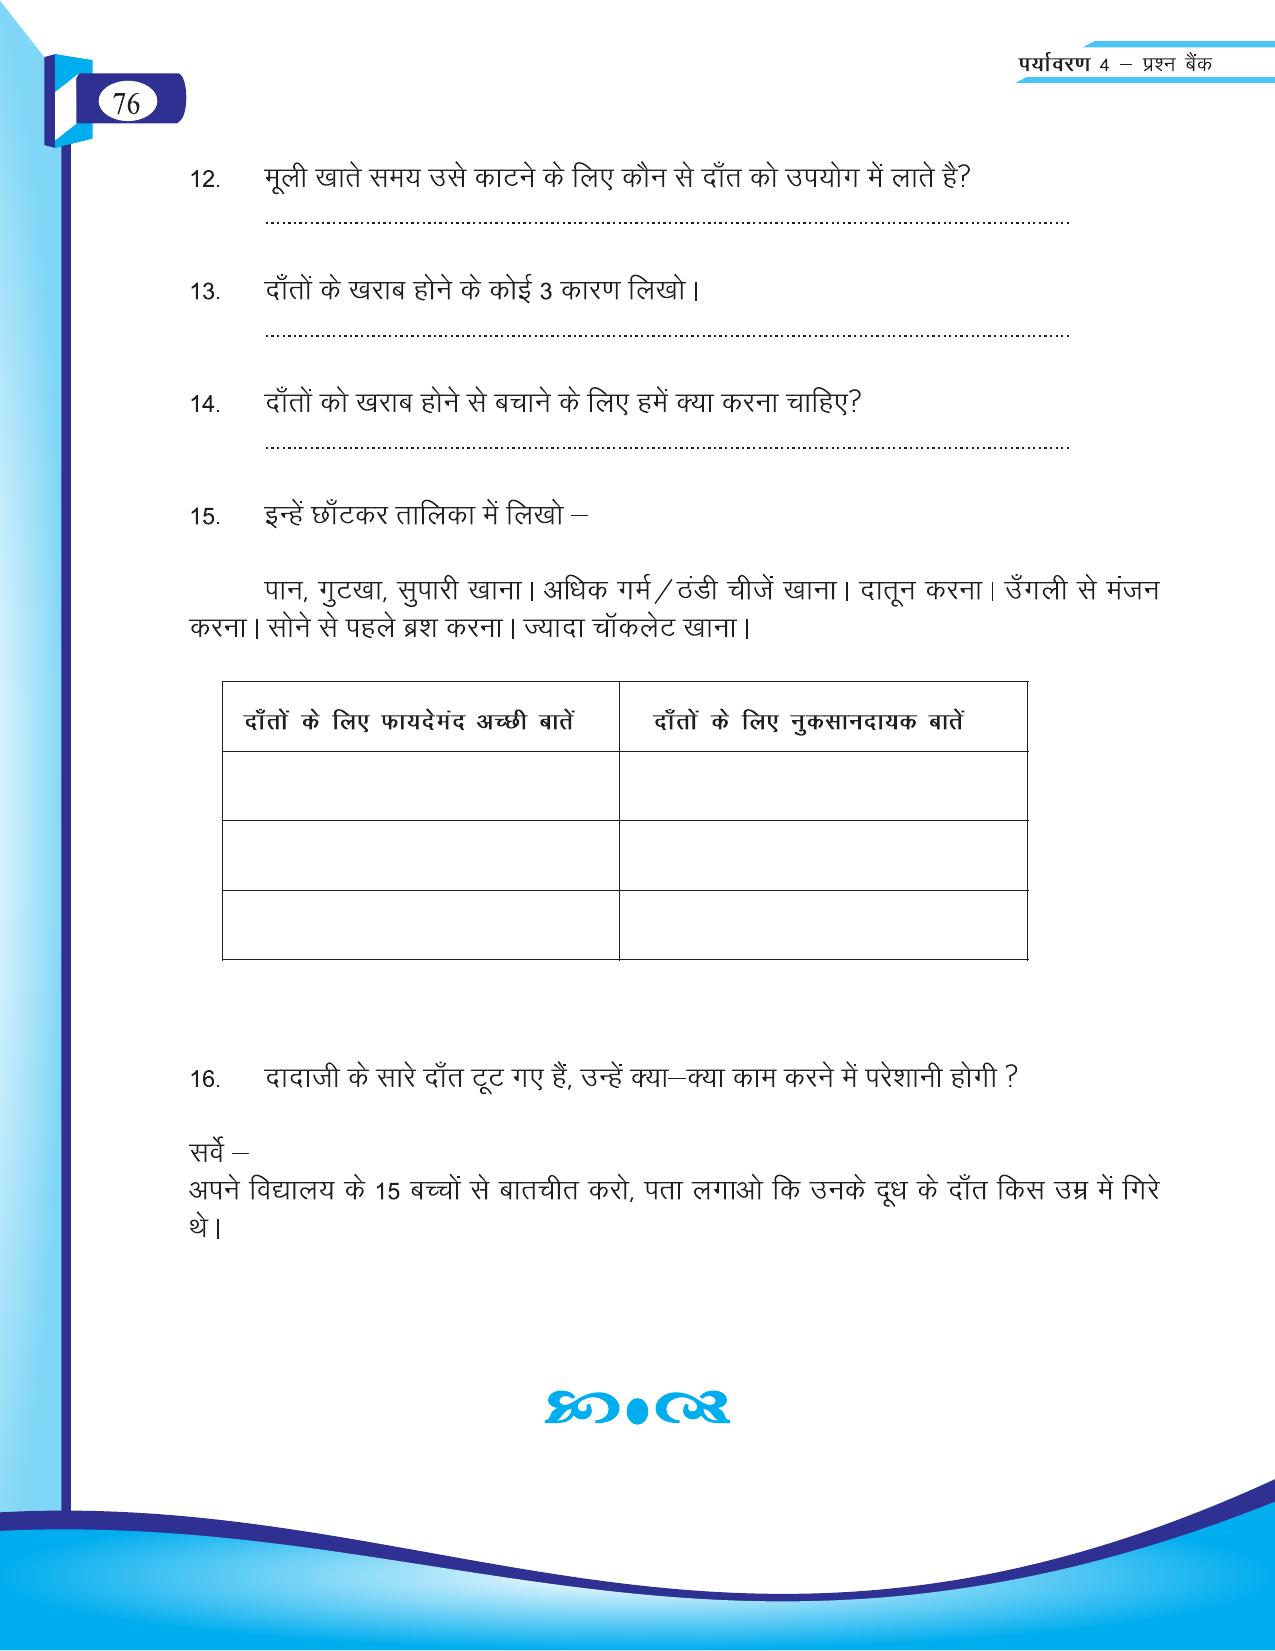 Chhattisgarh Board Class 4 EVS Question Bank 2015-16 - Page 5